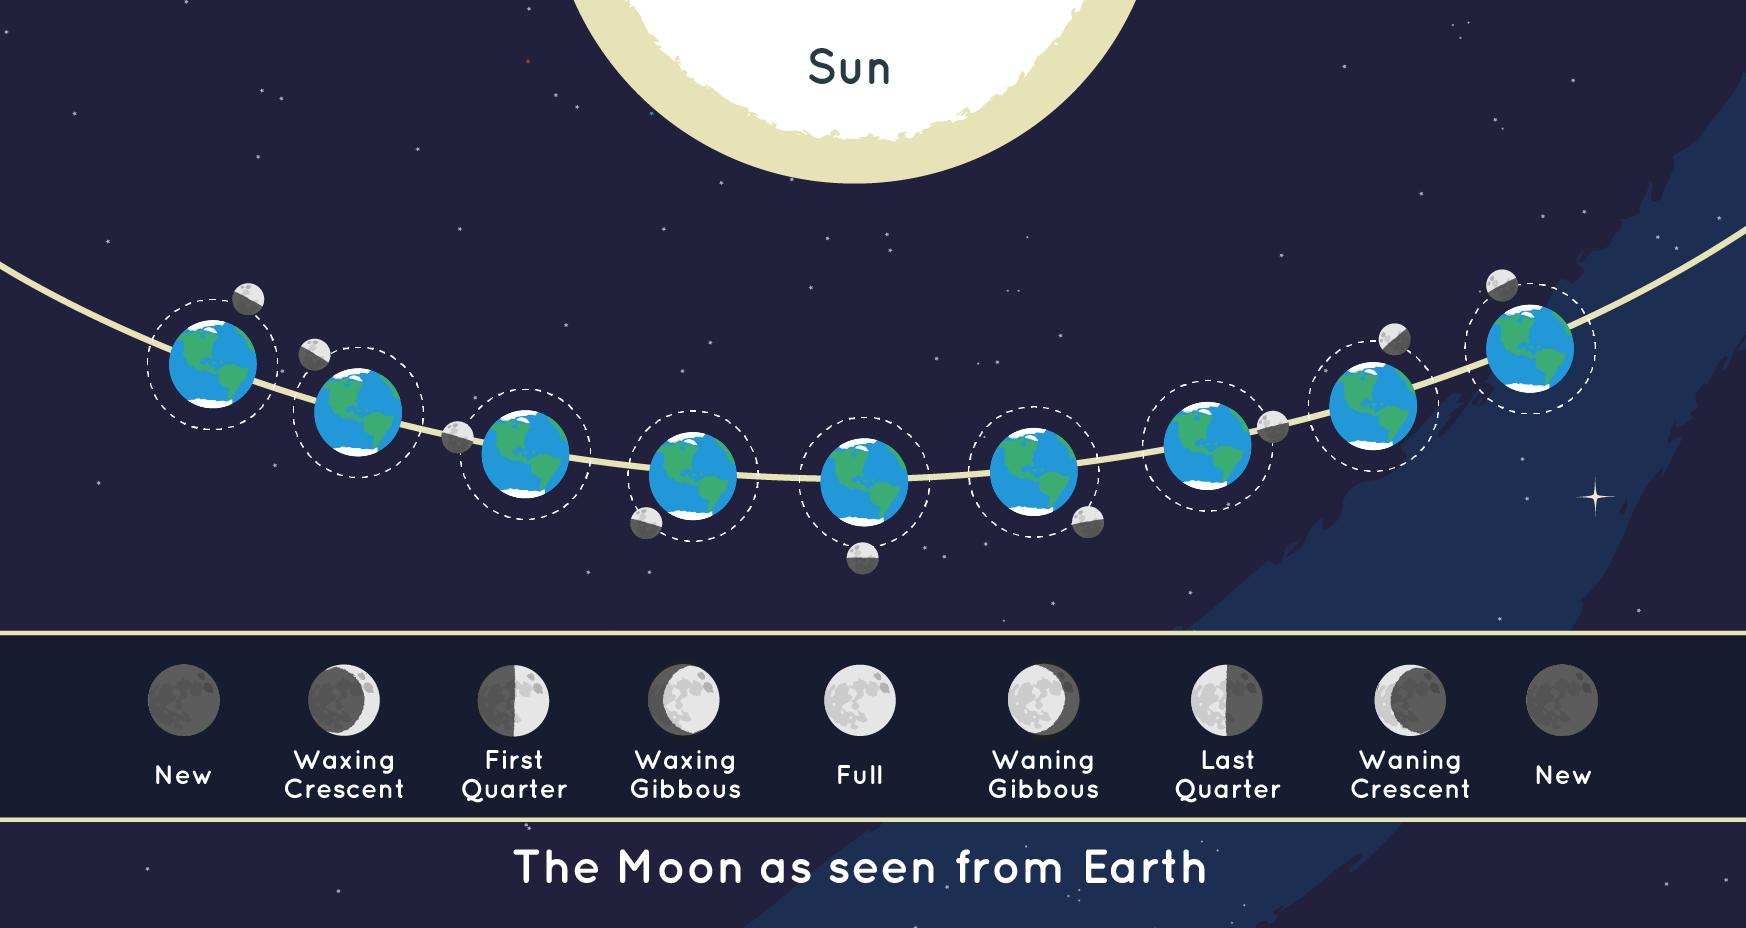 Moon phases diagram explained. Sun, Earth, Moon